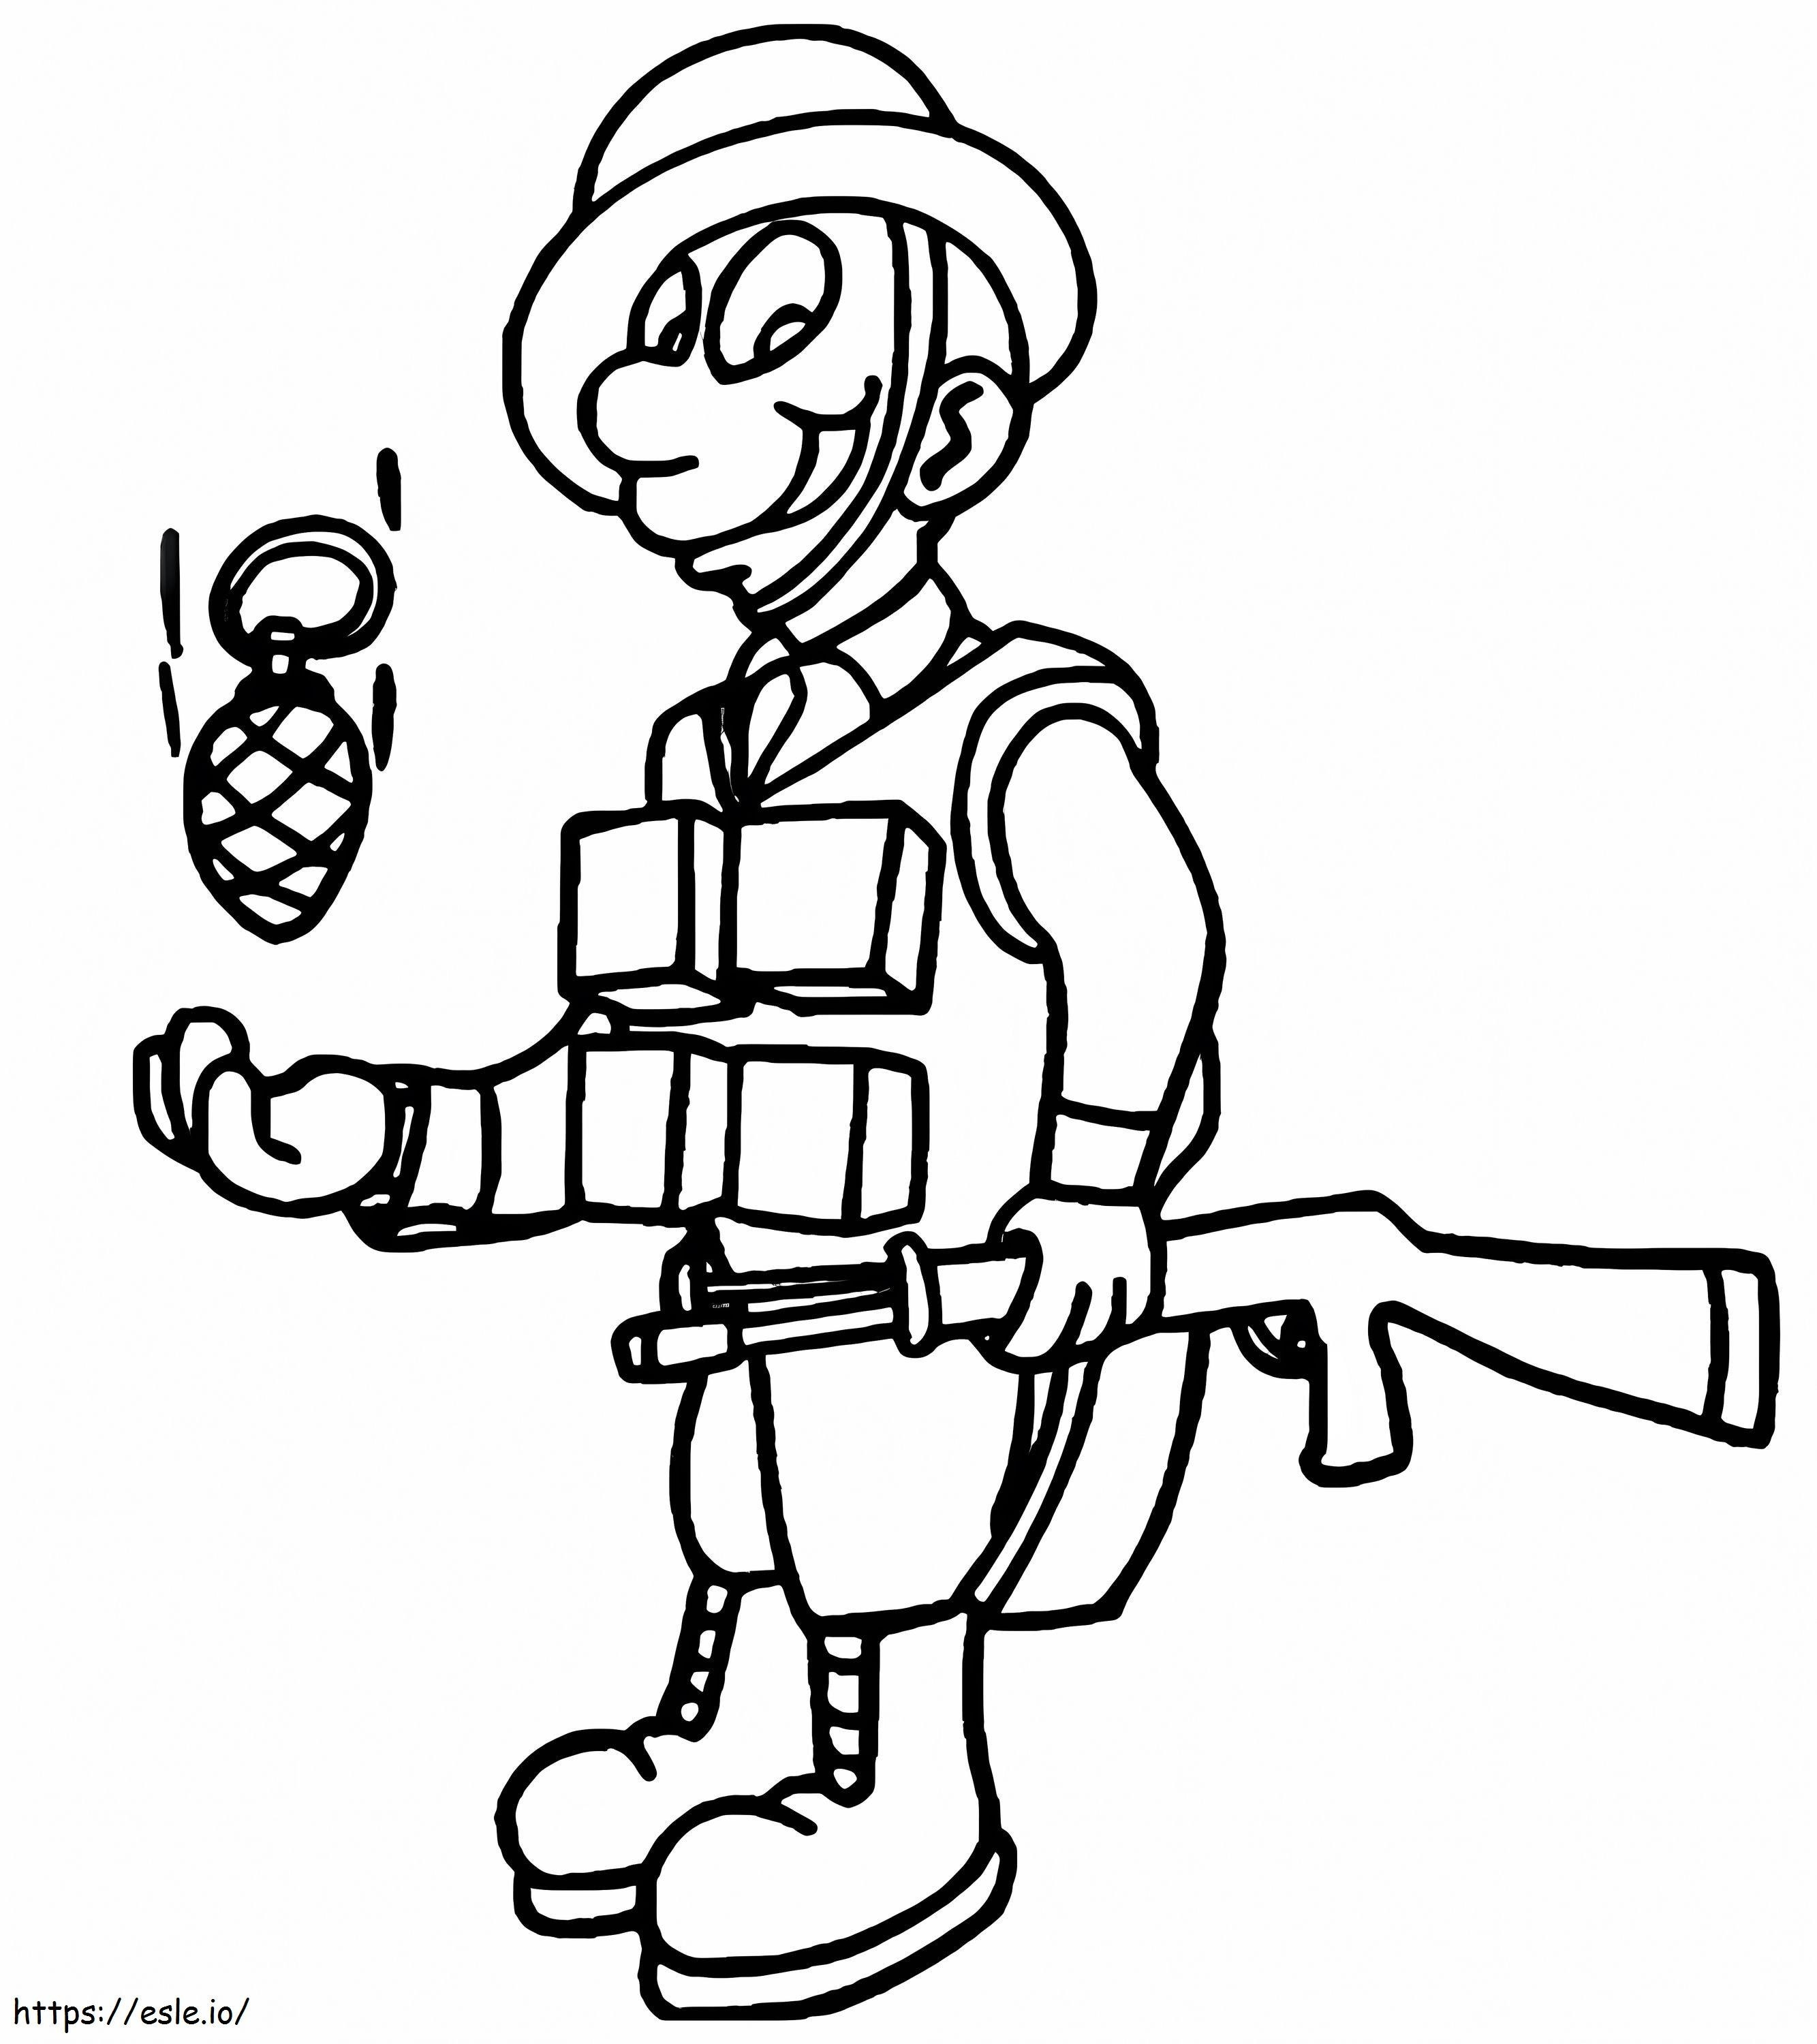 Soldado Segurando Arma para colorir